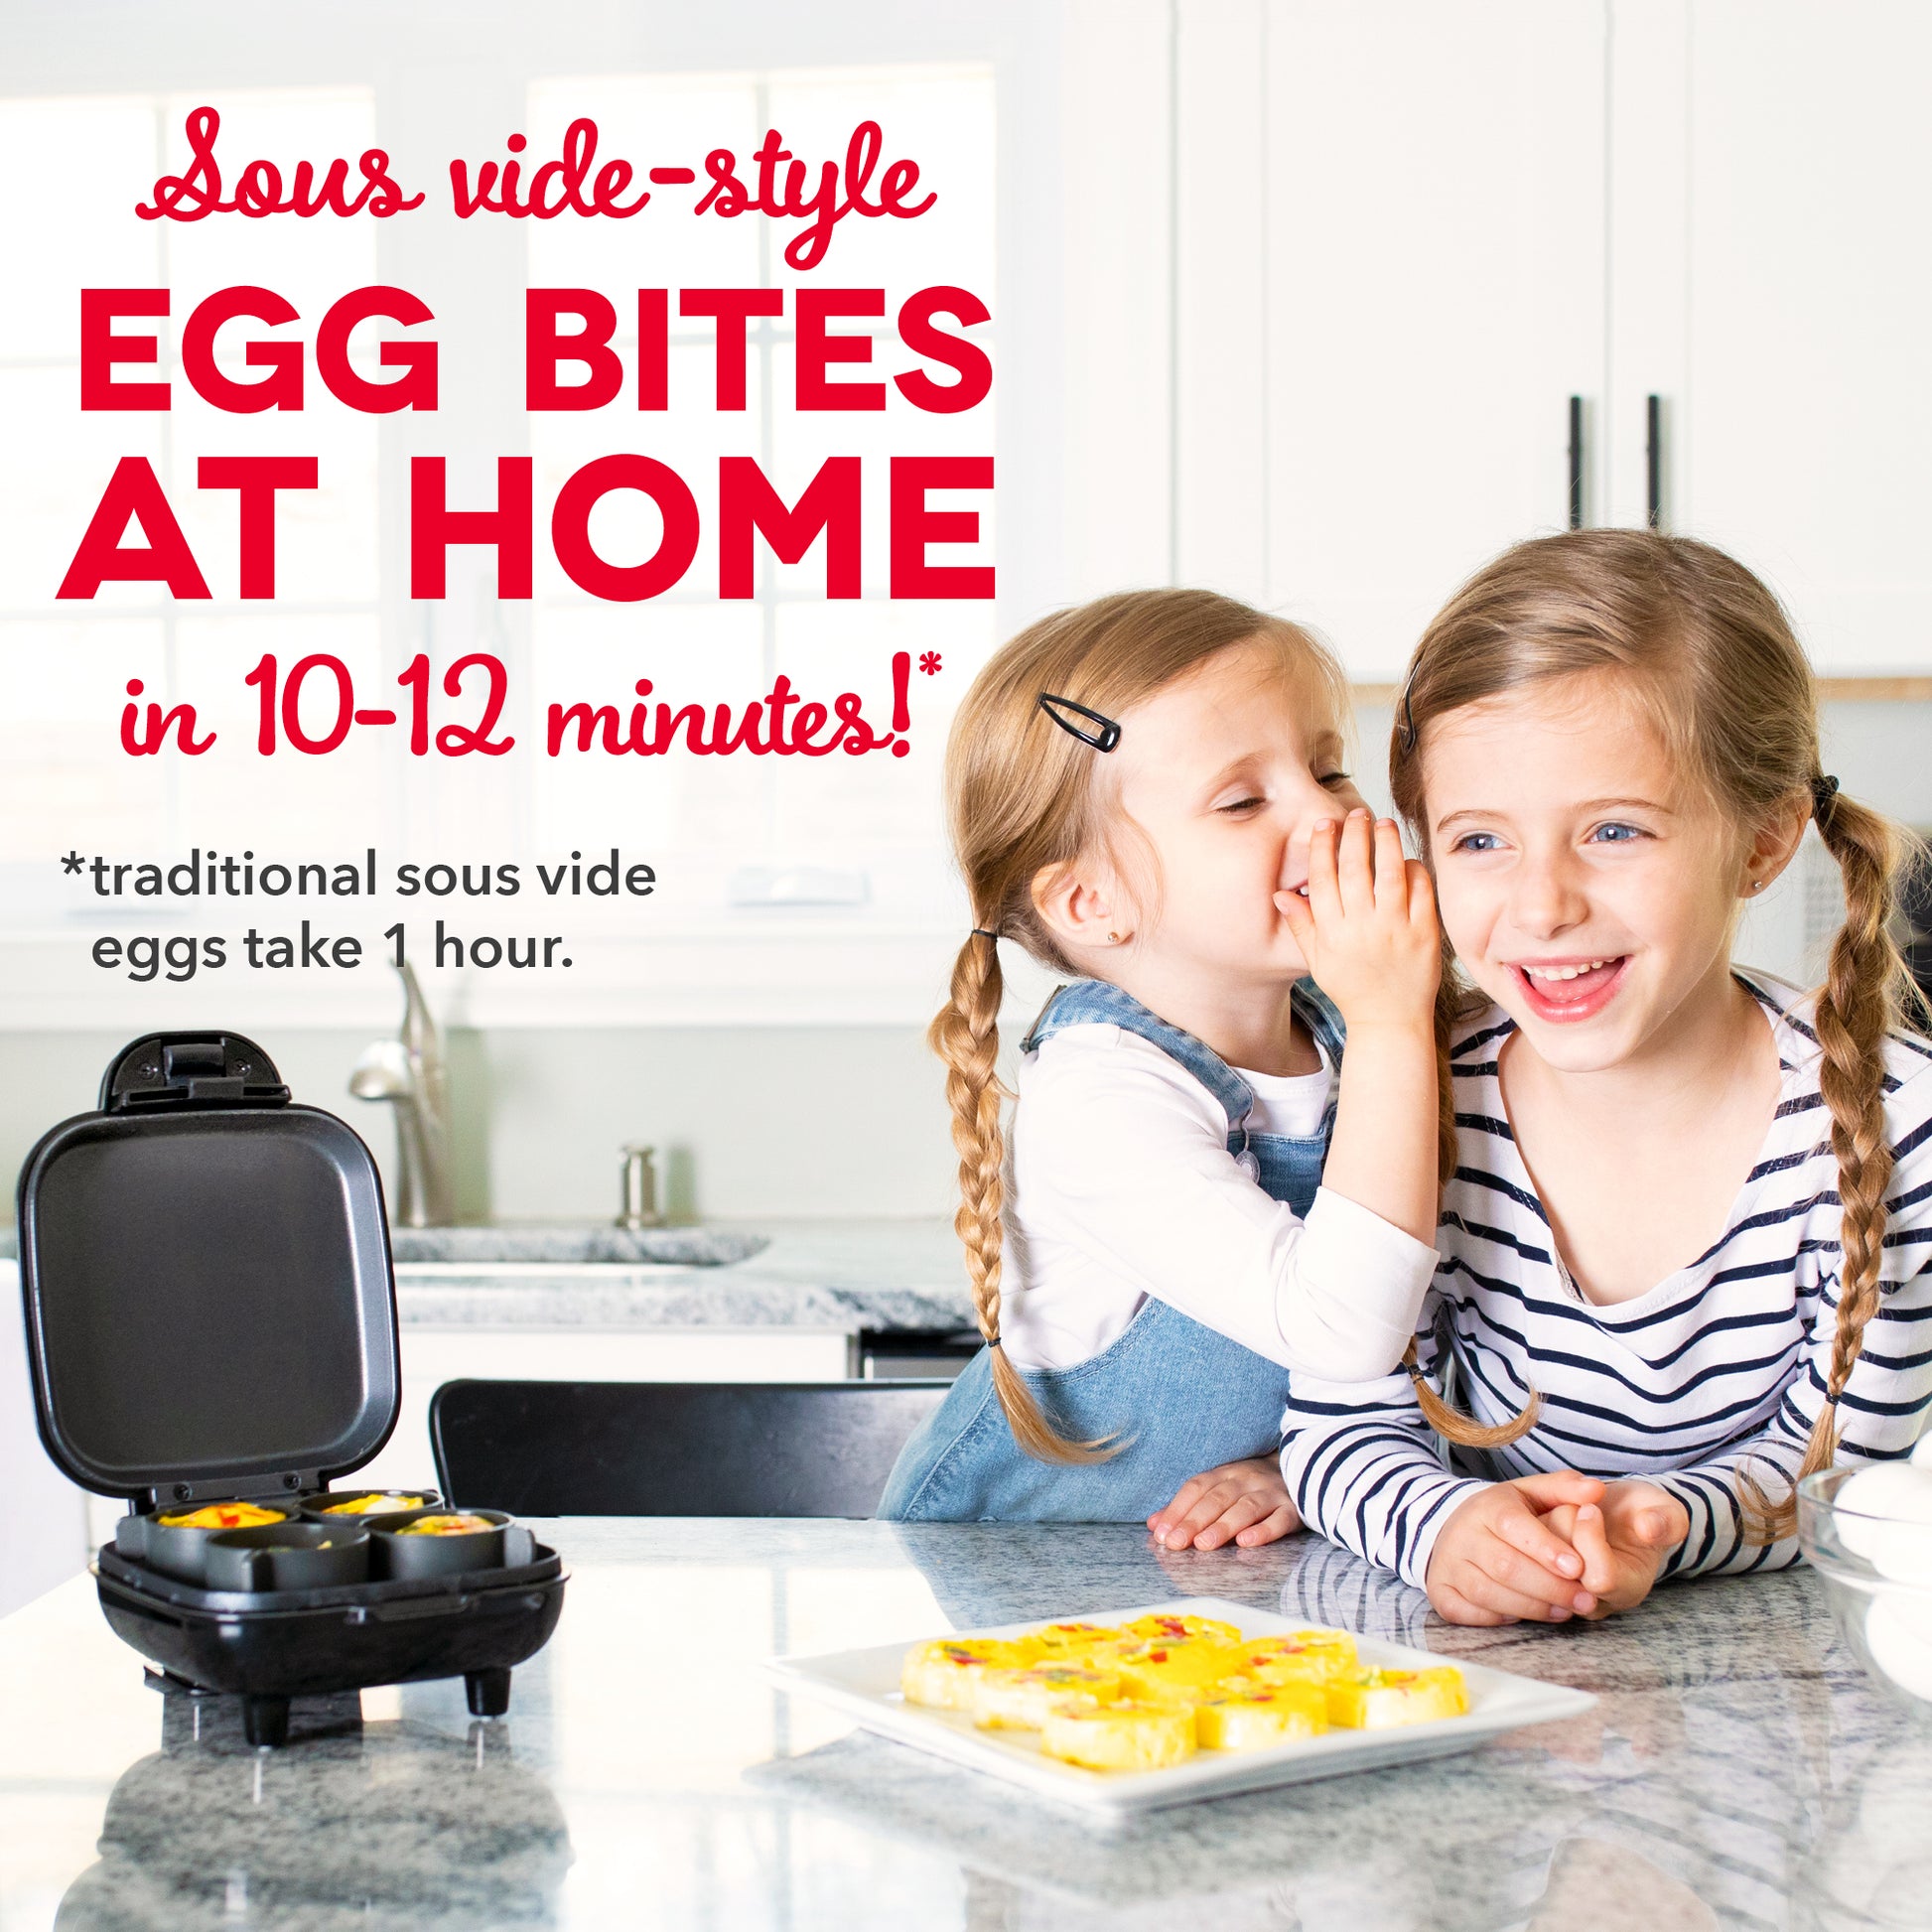 Dash Sous Vide Style Family Size Egg Bite Maker for Breakfast